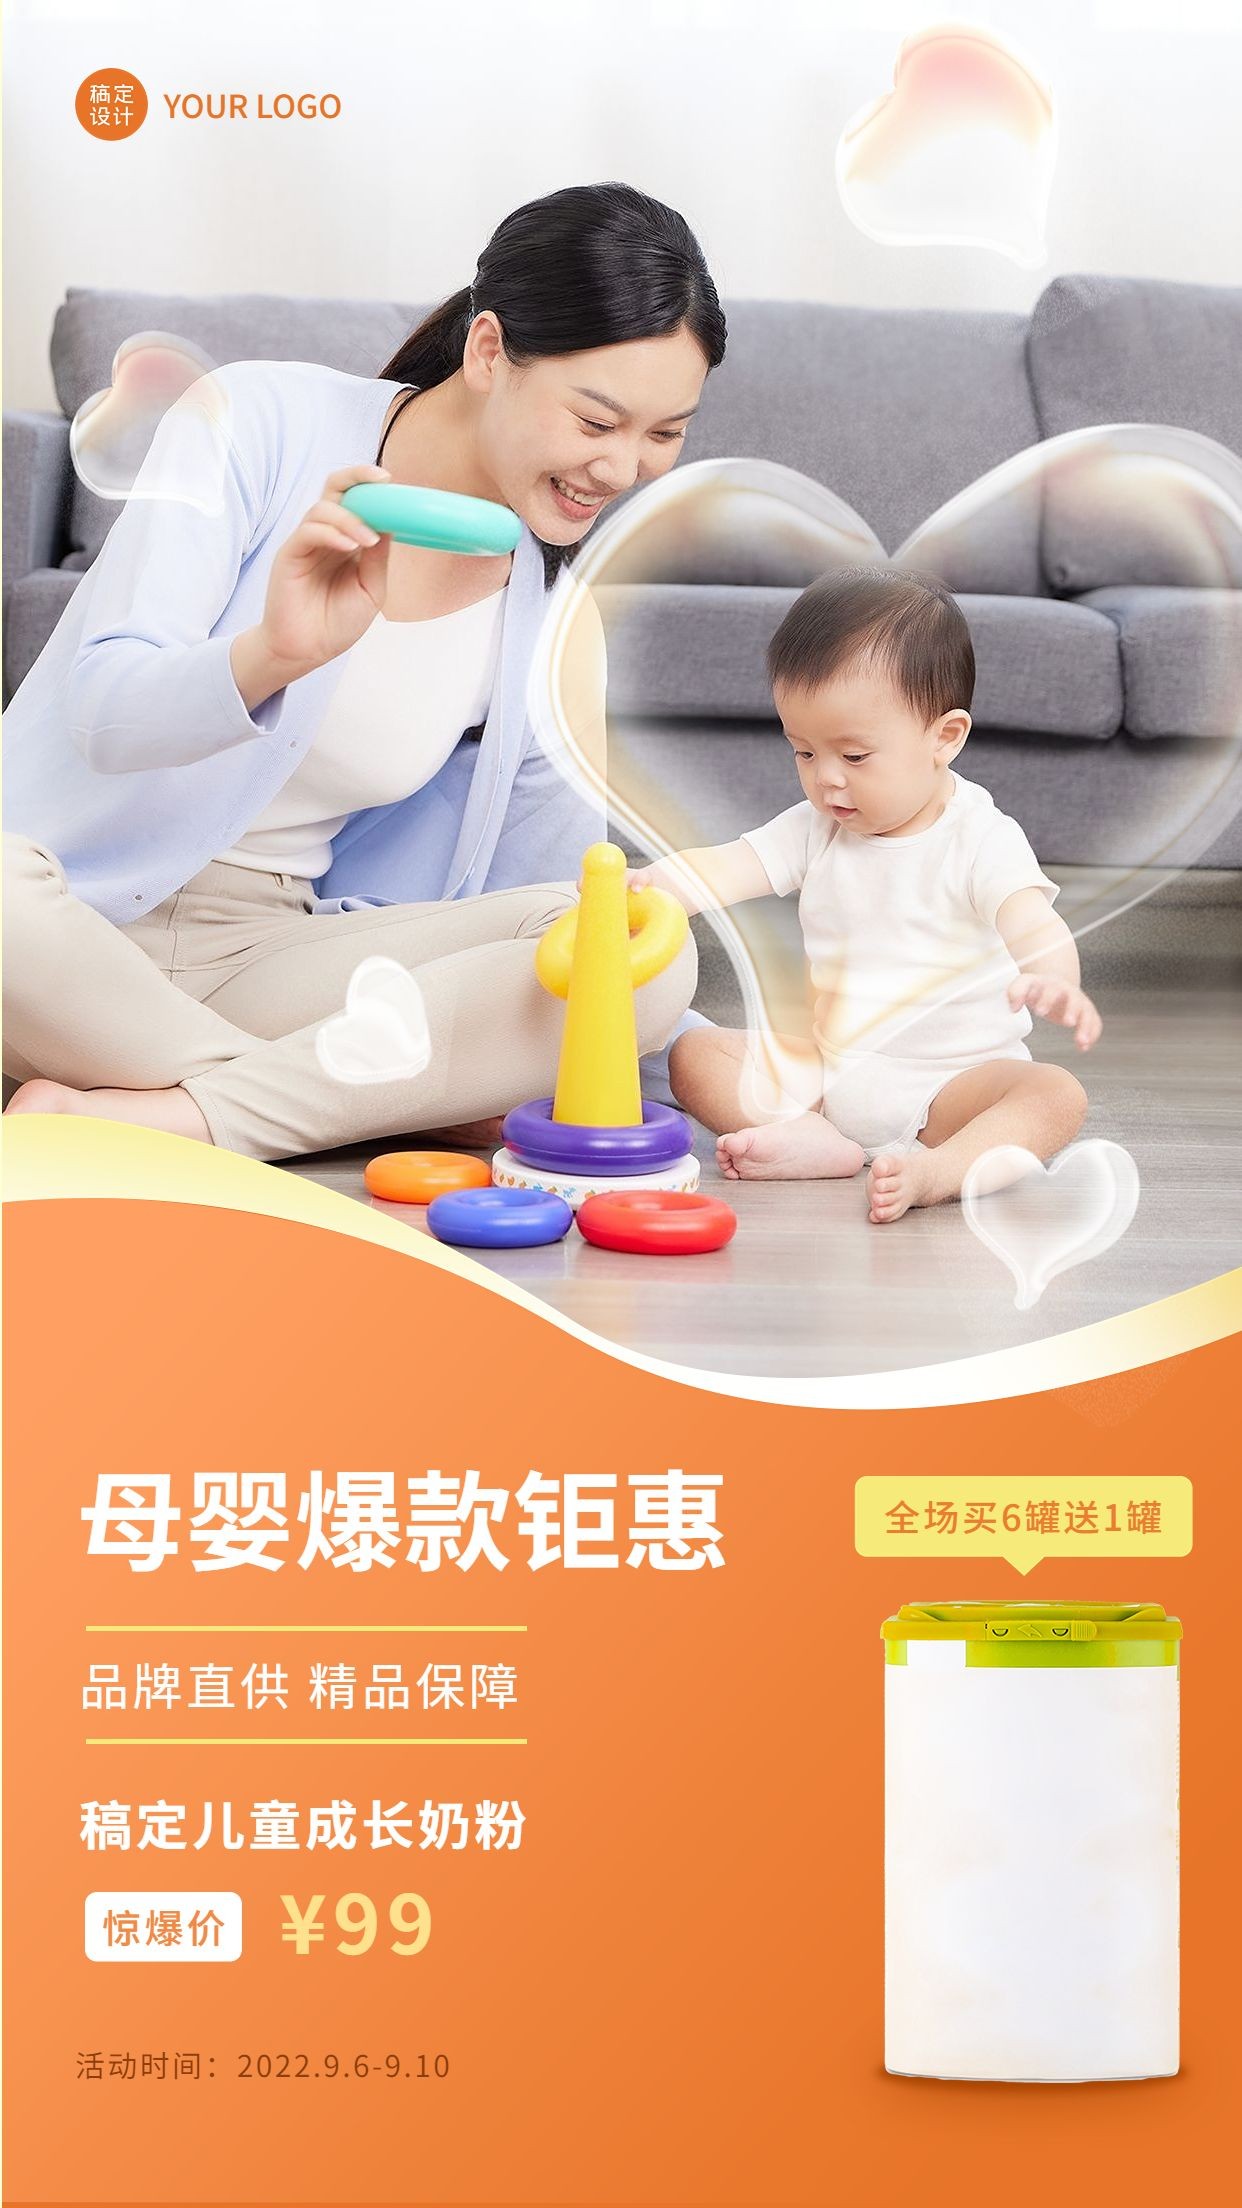 微商母婴亲子奶粉产品营销促销打折活动实景手机海报